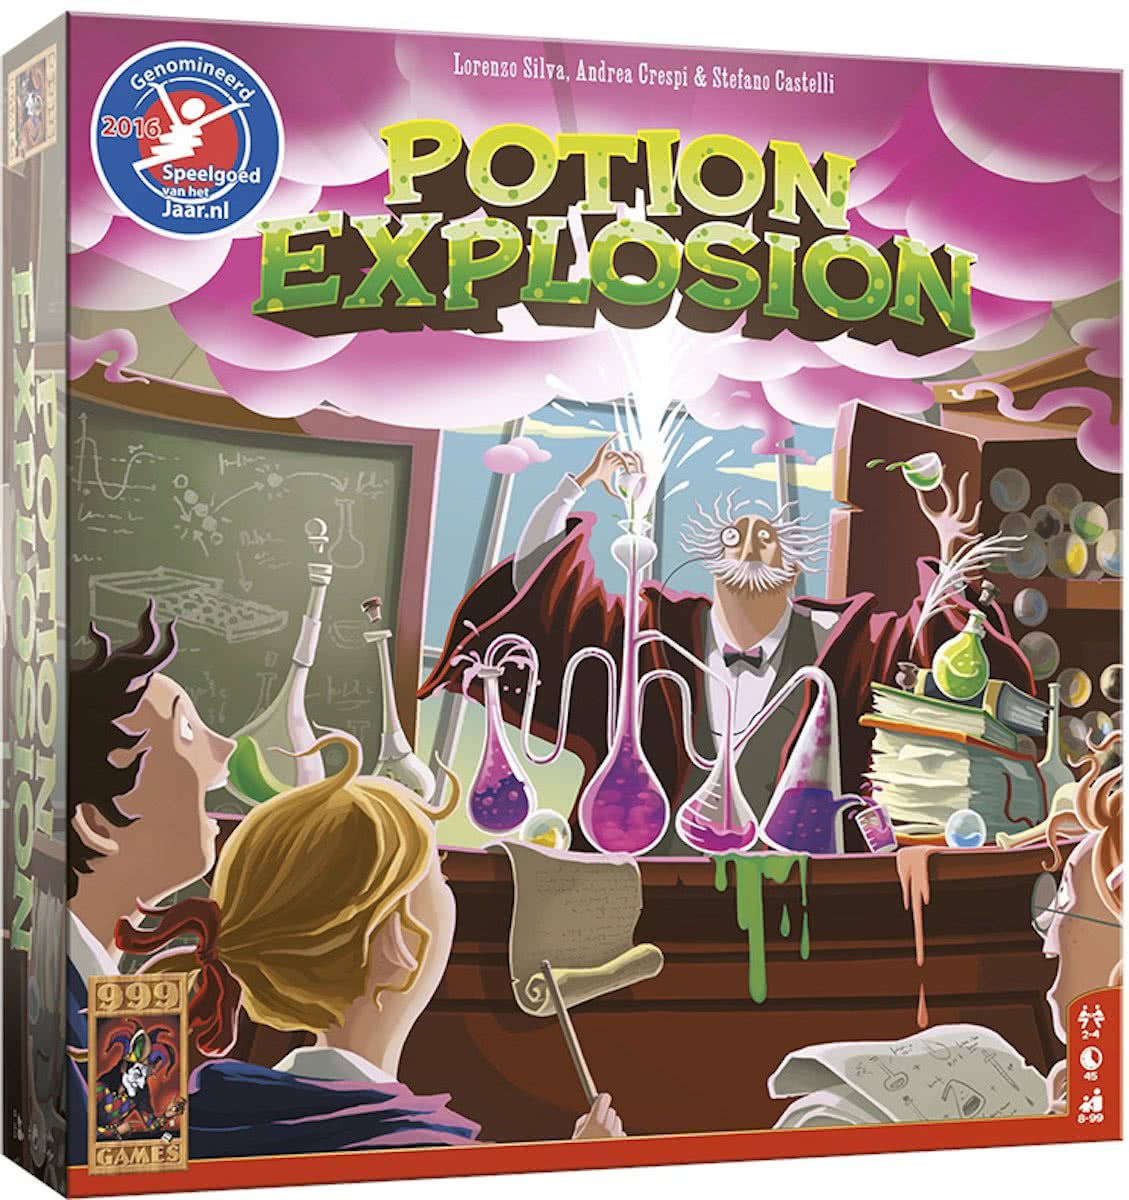 Potion Explosion description reviews